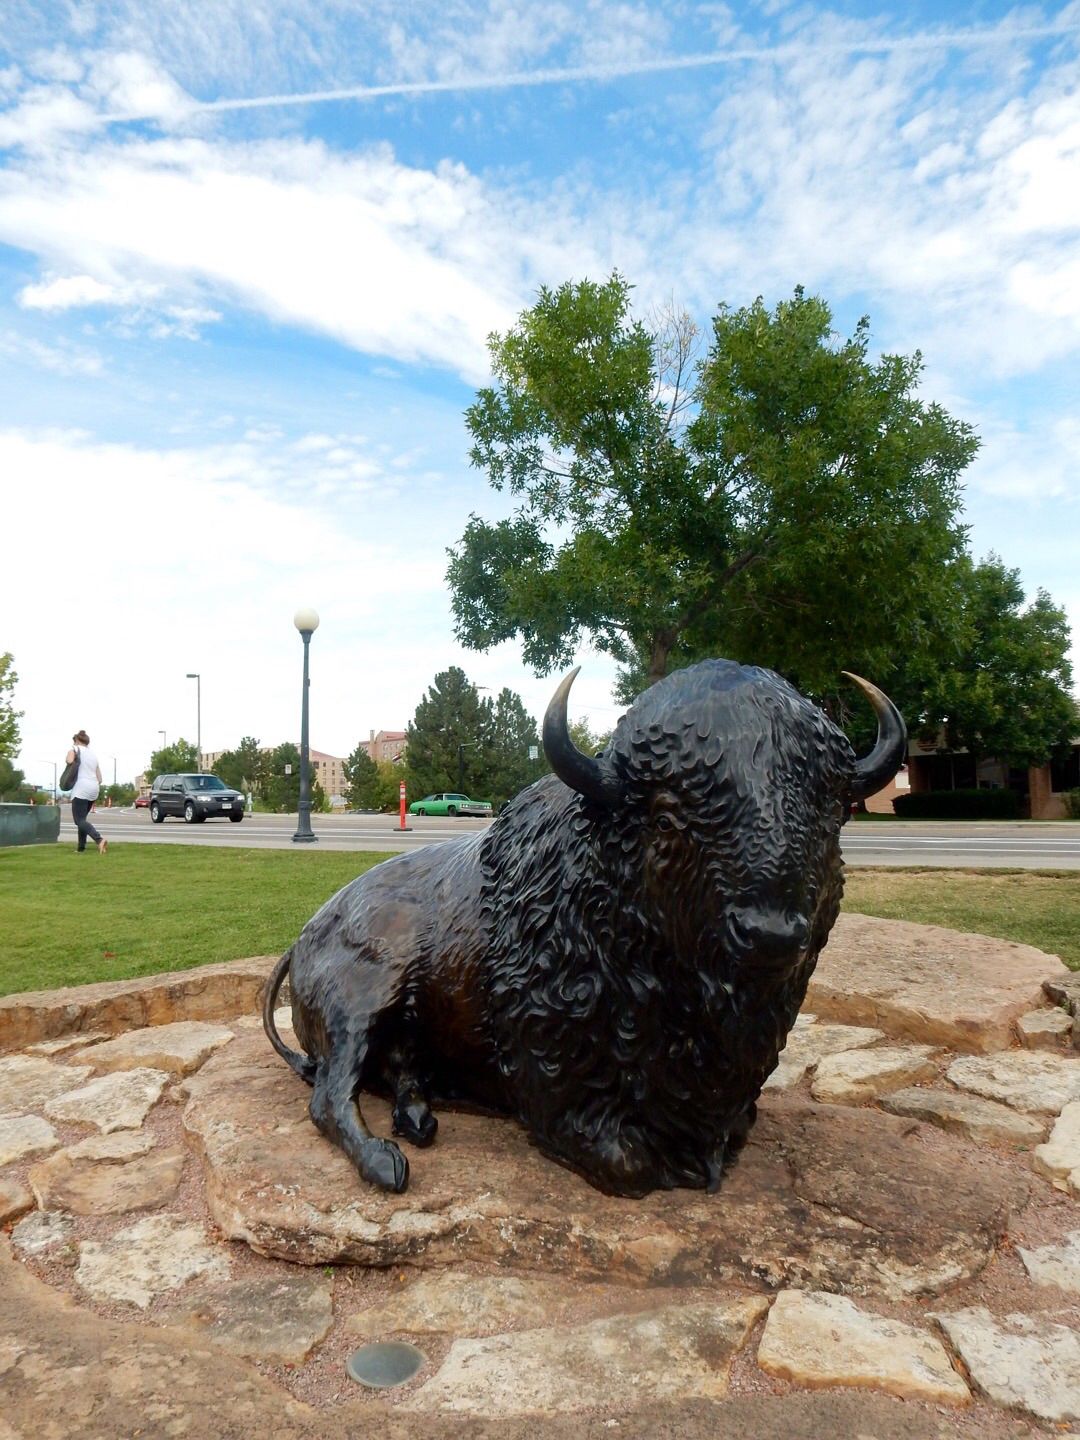 Outdoor bison statue